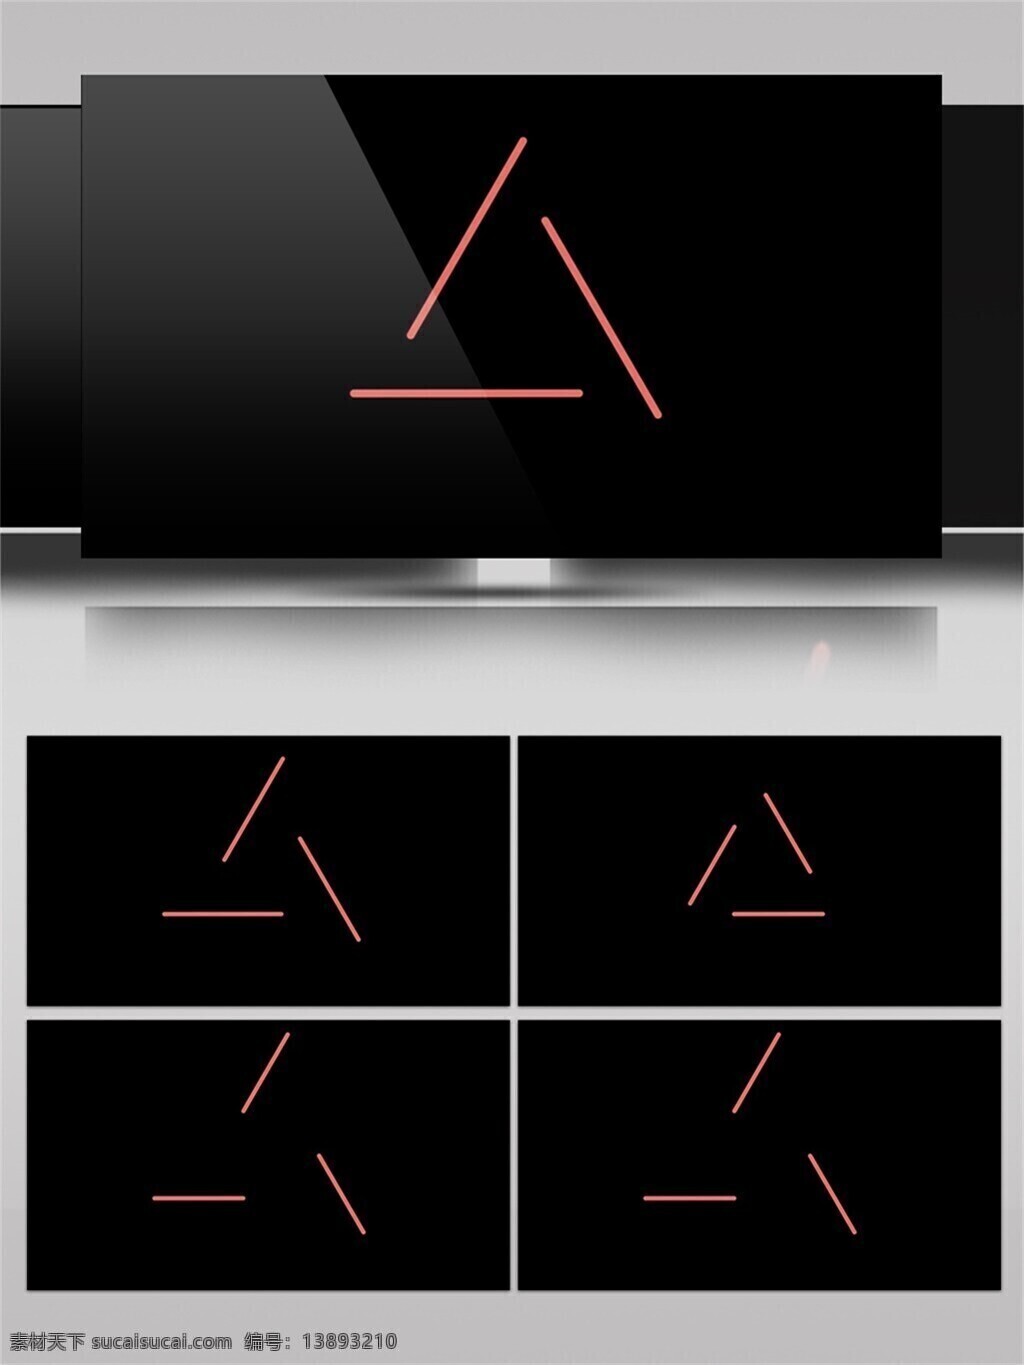 动态 图形 动画 分散 拼接 橙色 黑色 创意 视频素材 元素 三角形 图形图案